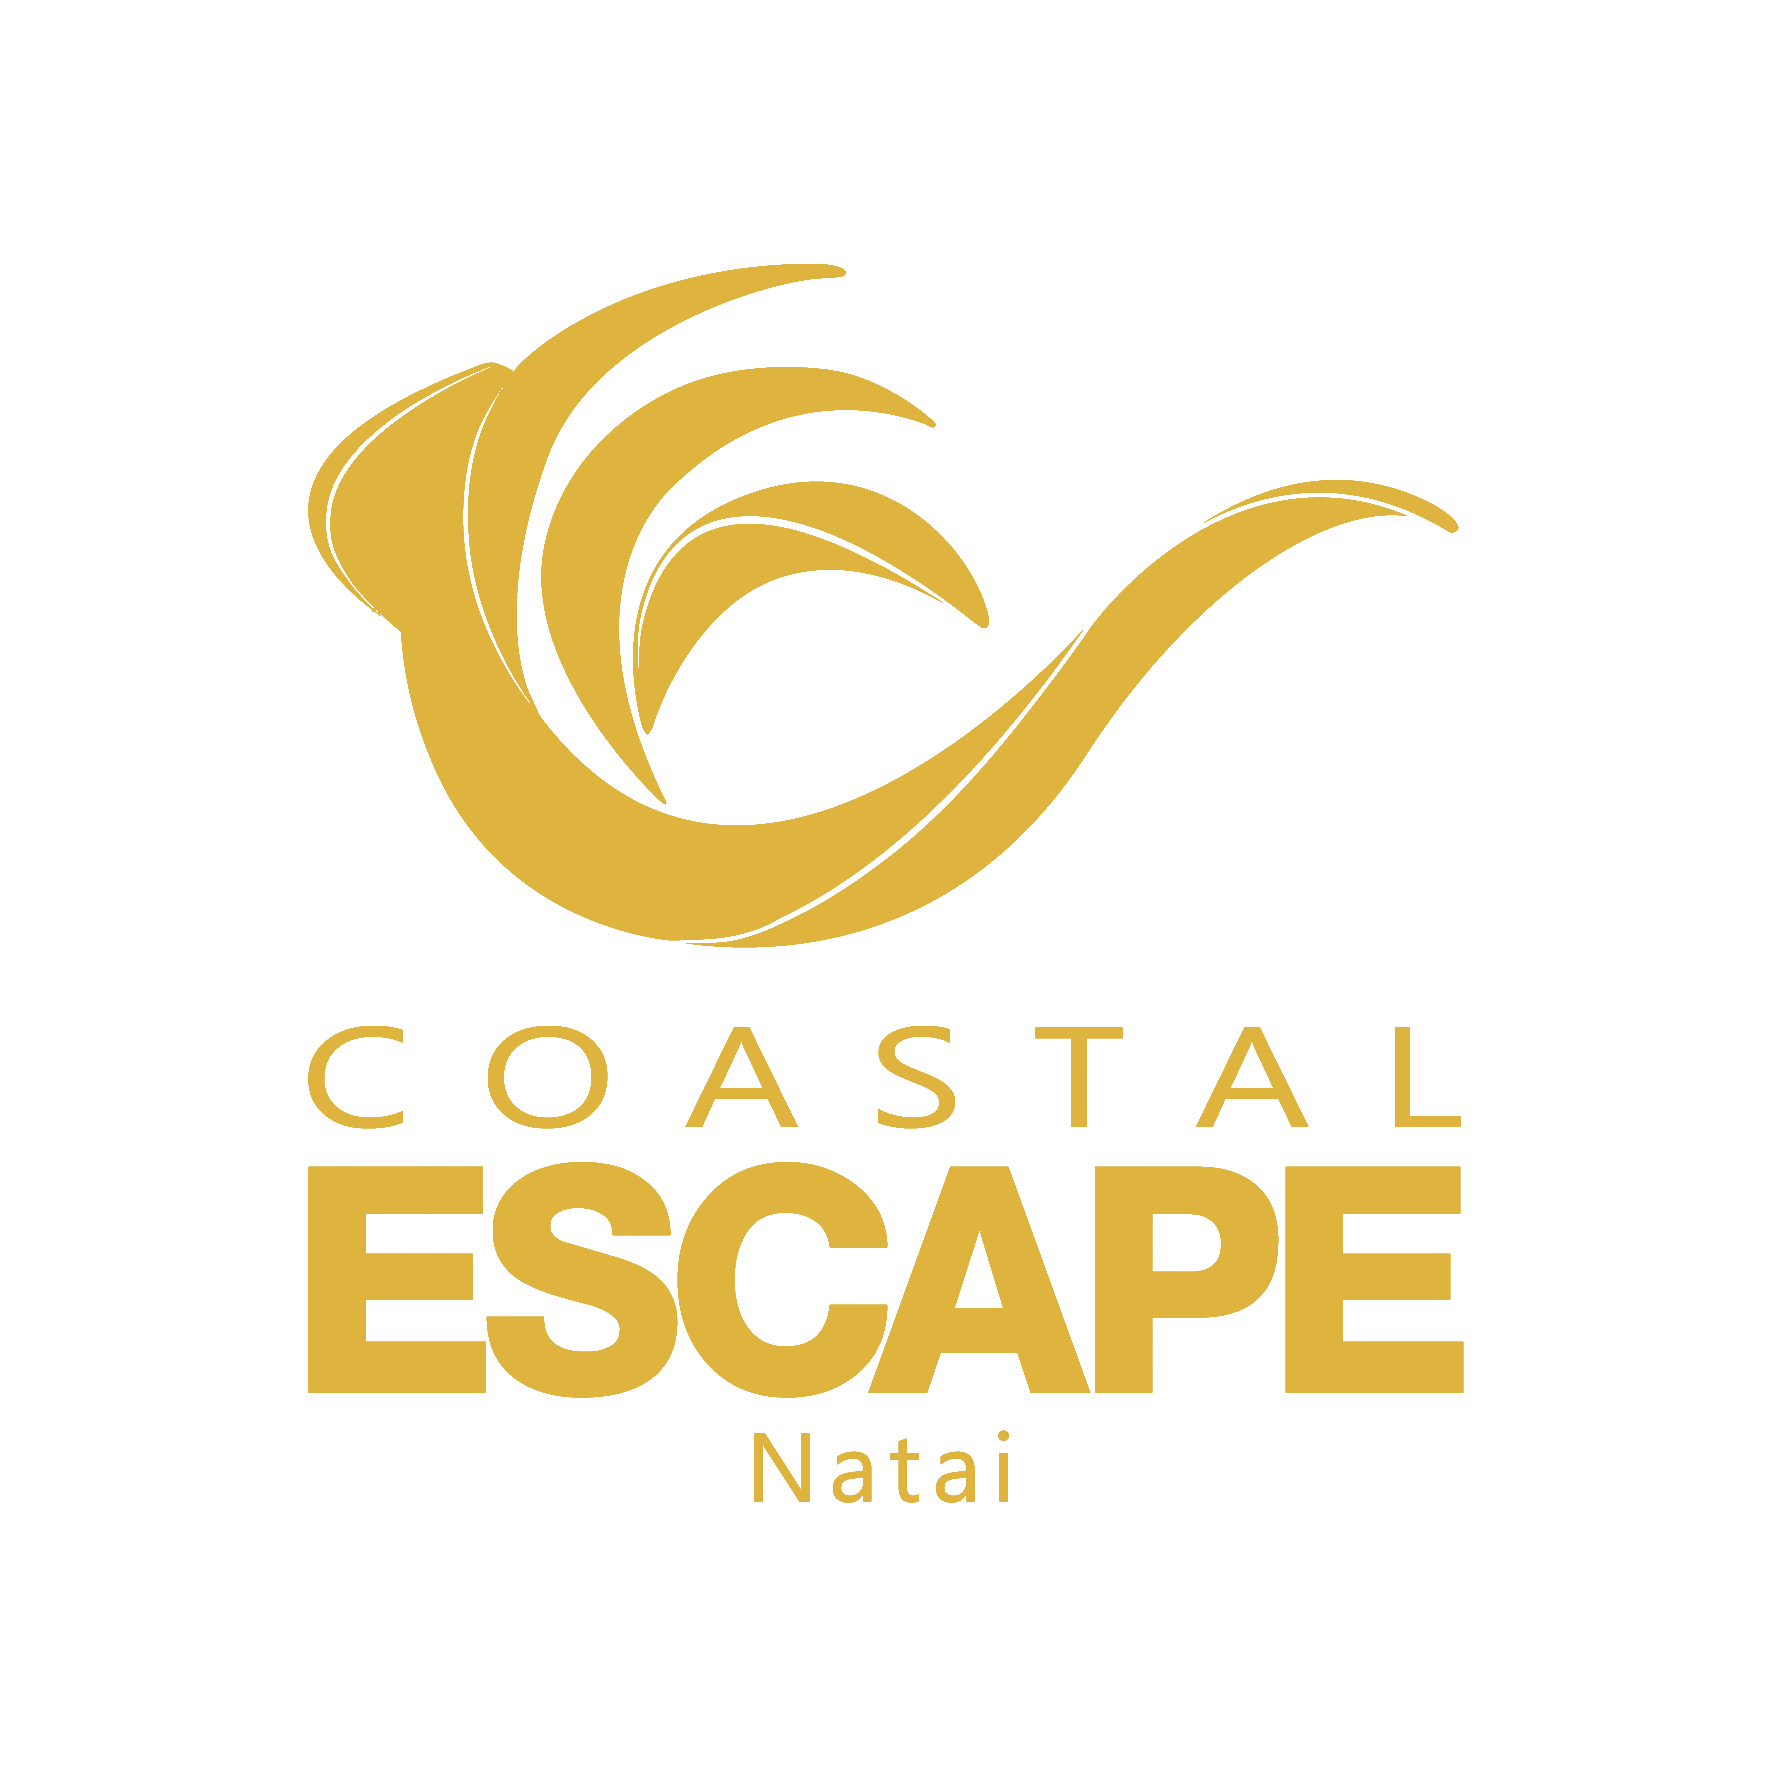 Coastal Escape Natai